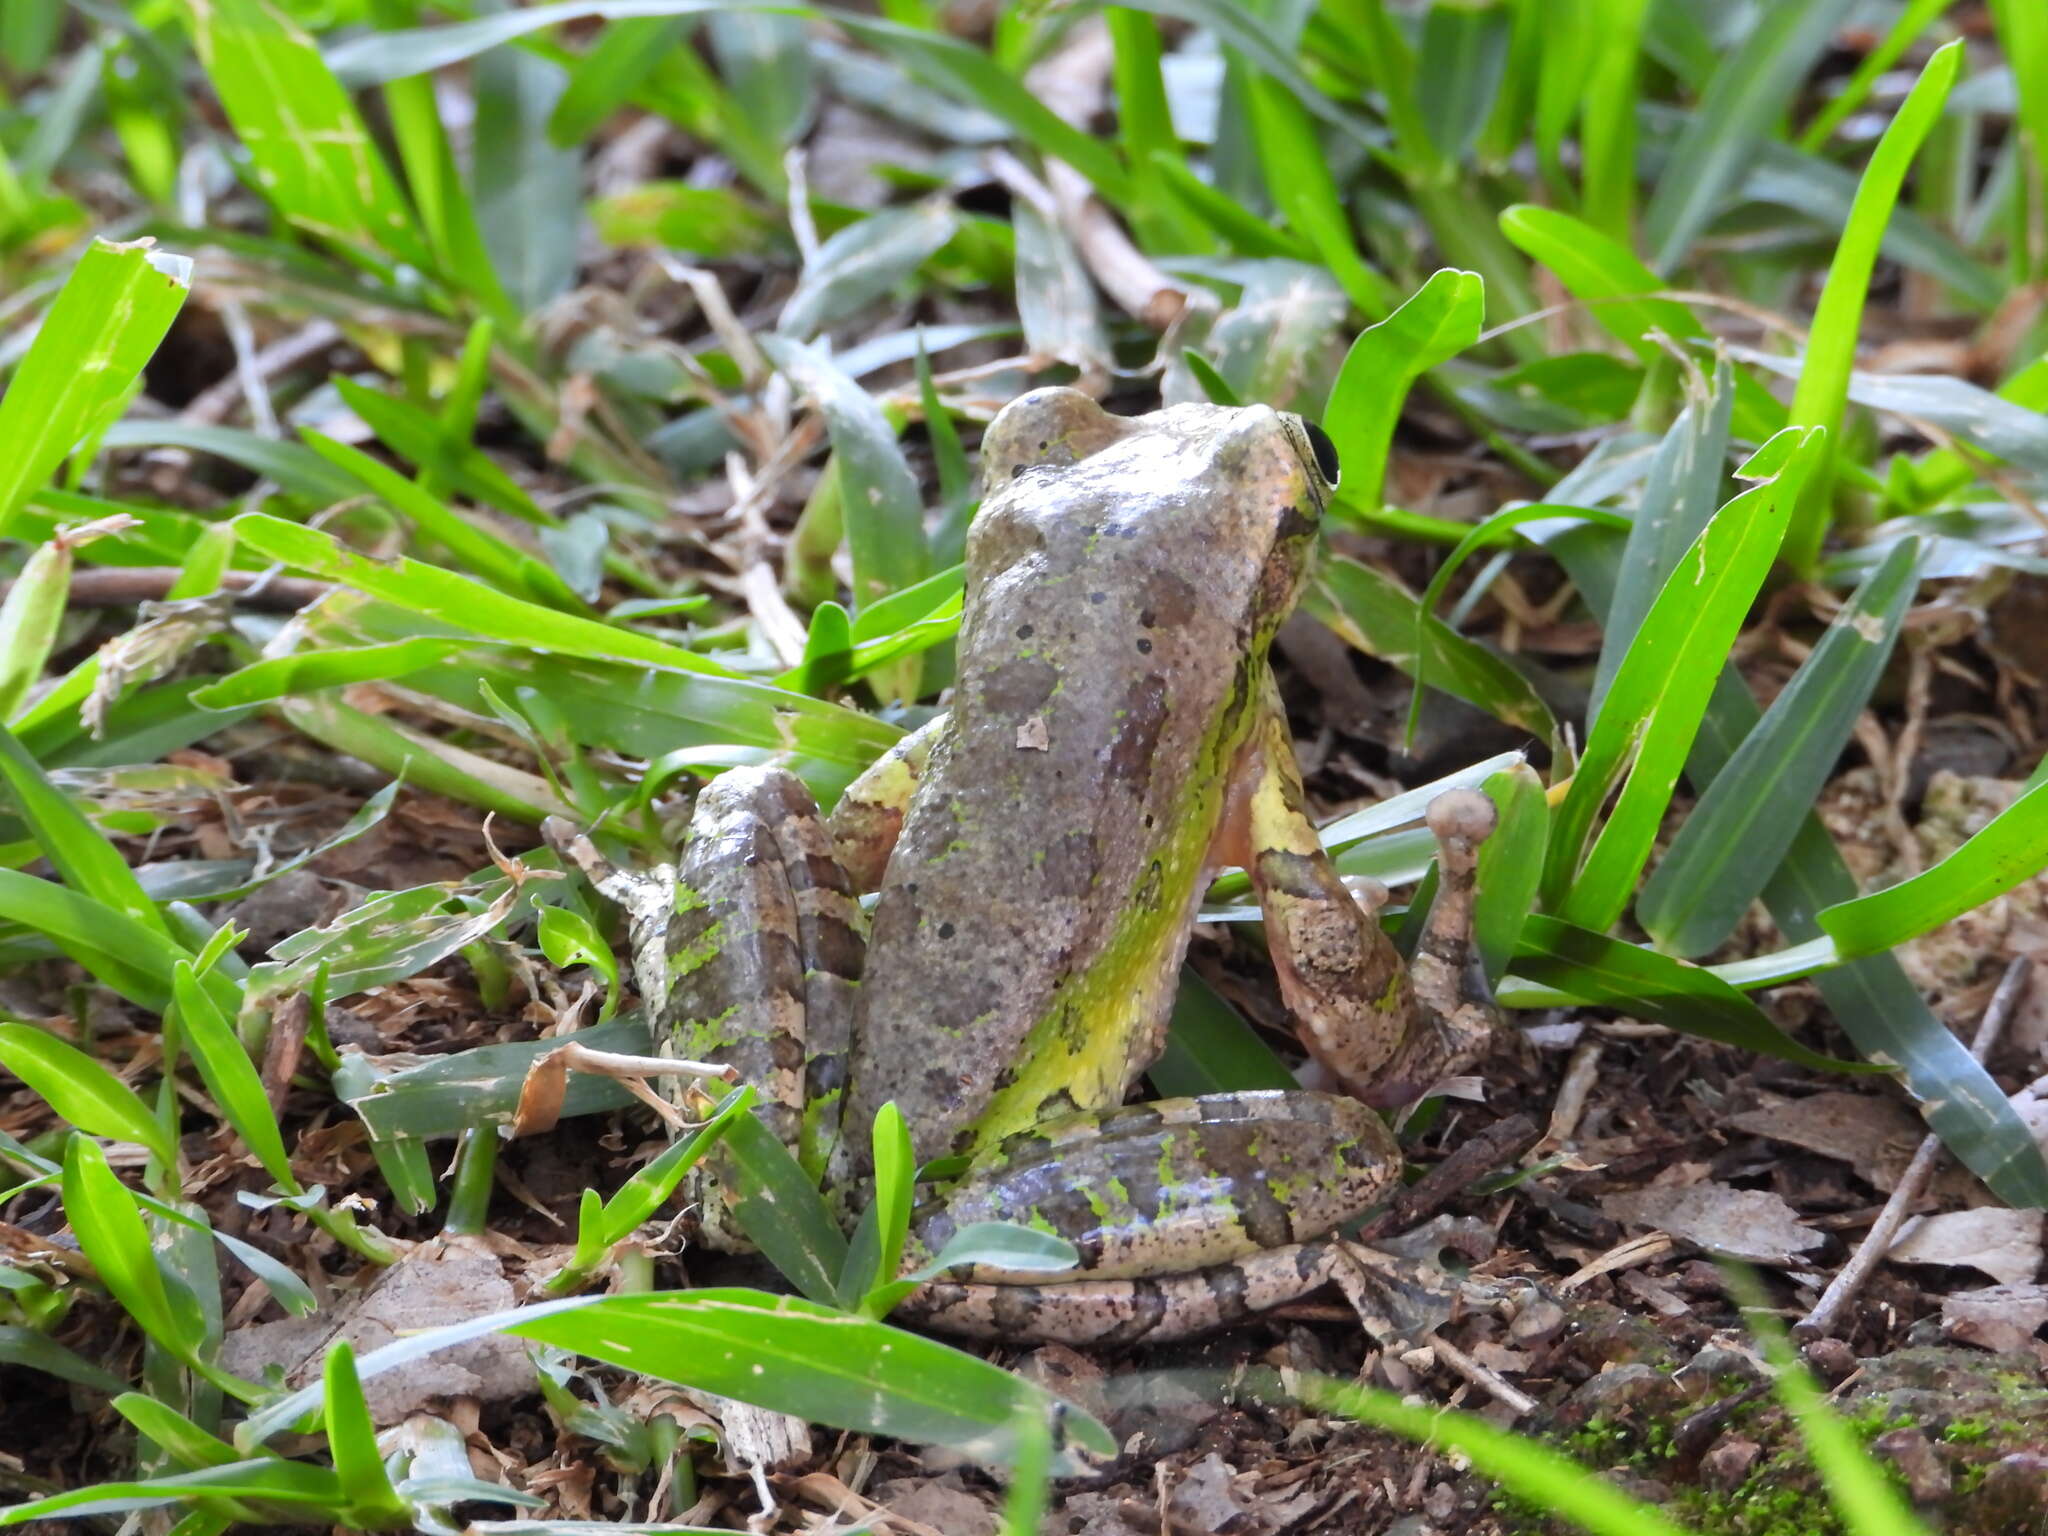 Image of Porthole Treefrog